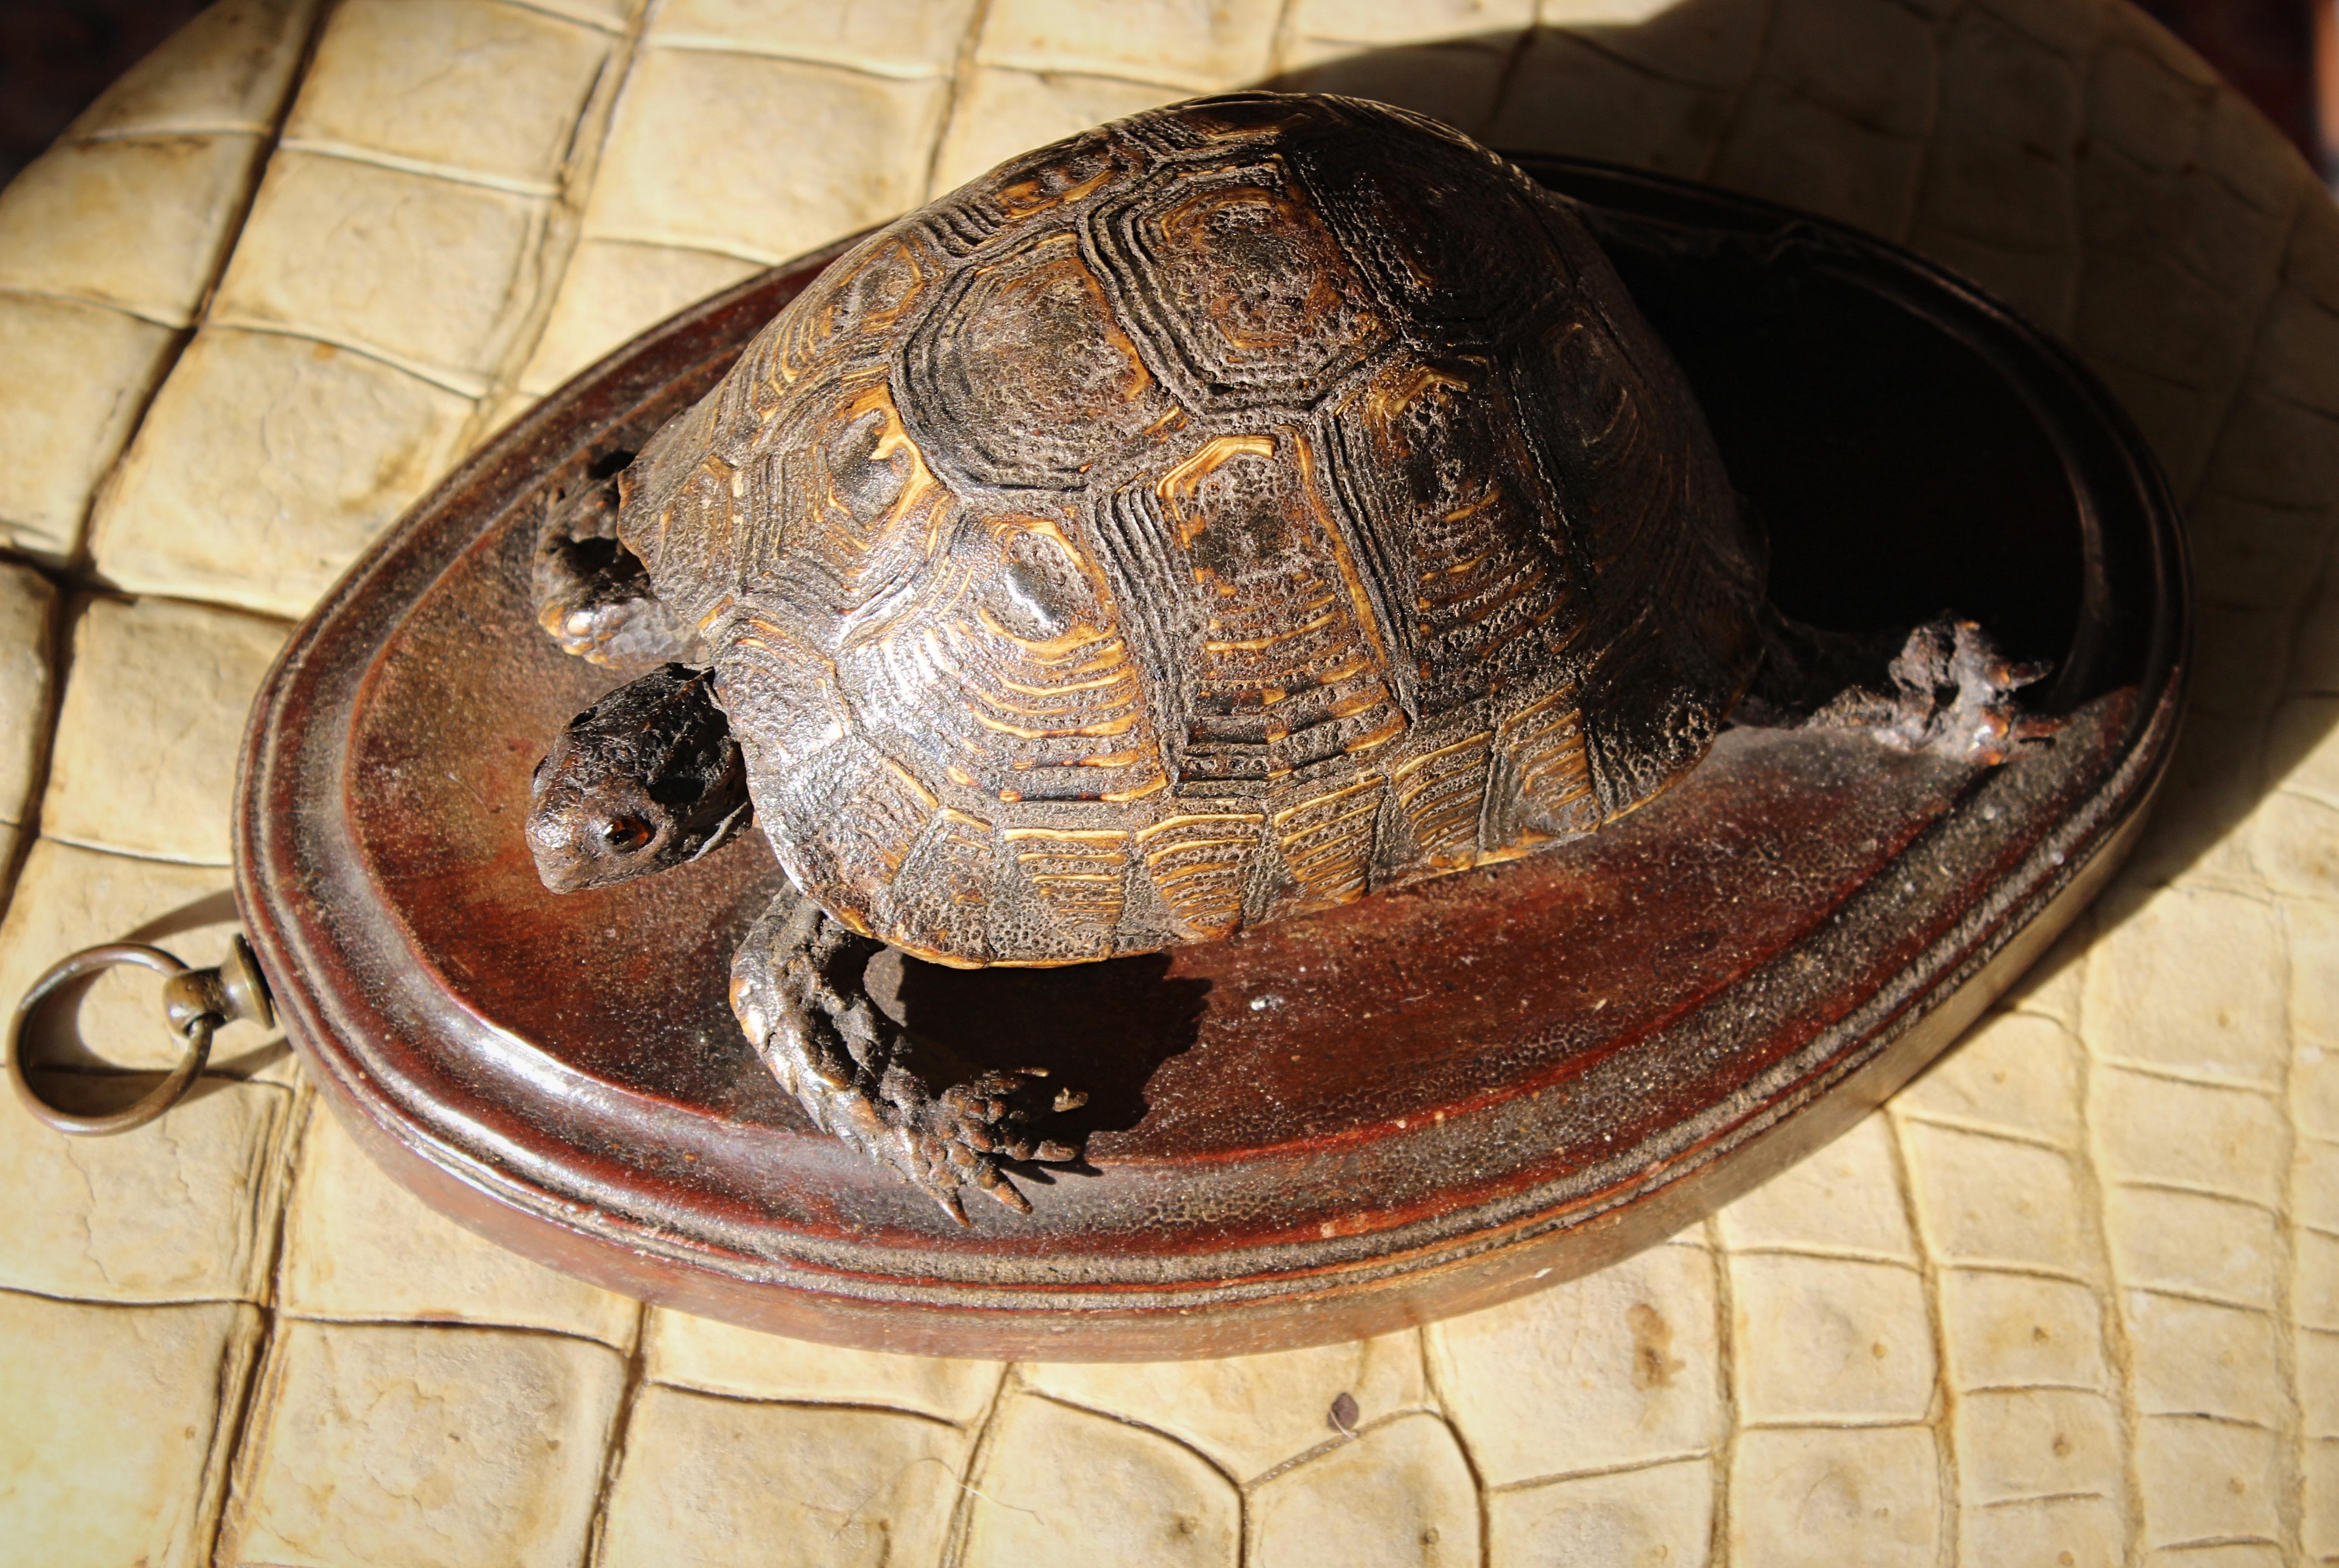 Une tortue taxidermique merveilleuse et totalement originale du début de l'époque victorienne, montée sur une épaisse planche ovale en chêne avec un bord décoratif chanfreiné et un anneau de suspension en laiton.

24 cm de longueur 
16,5 cm de